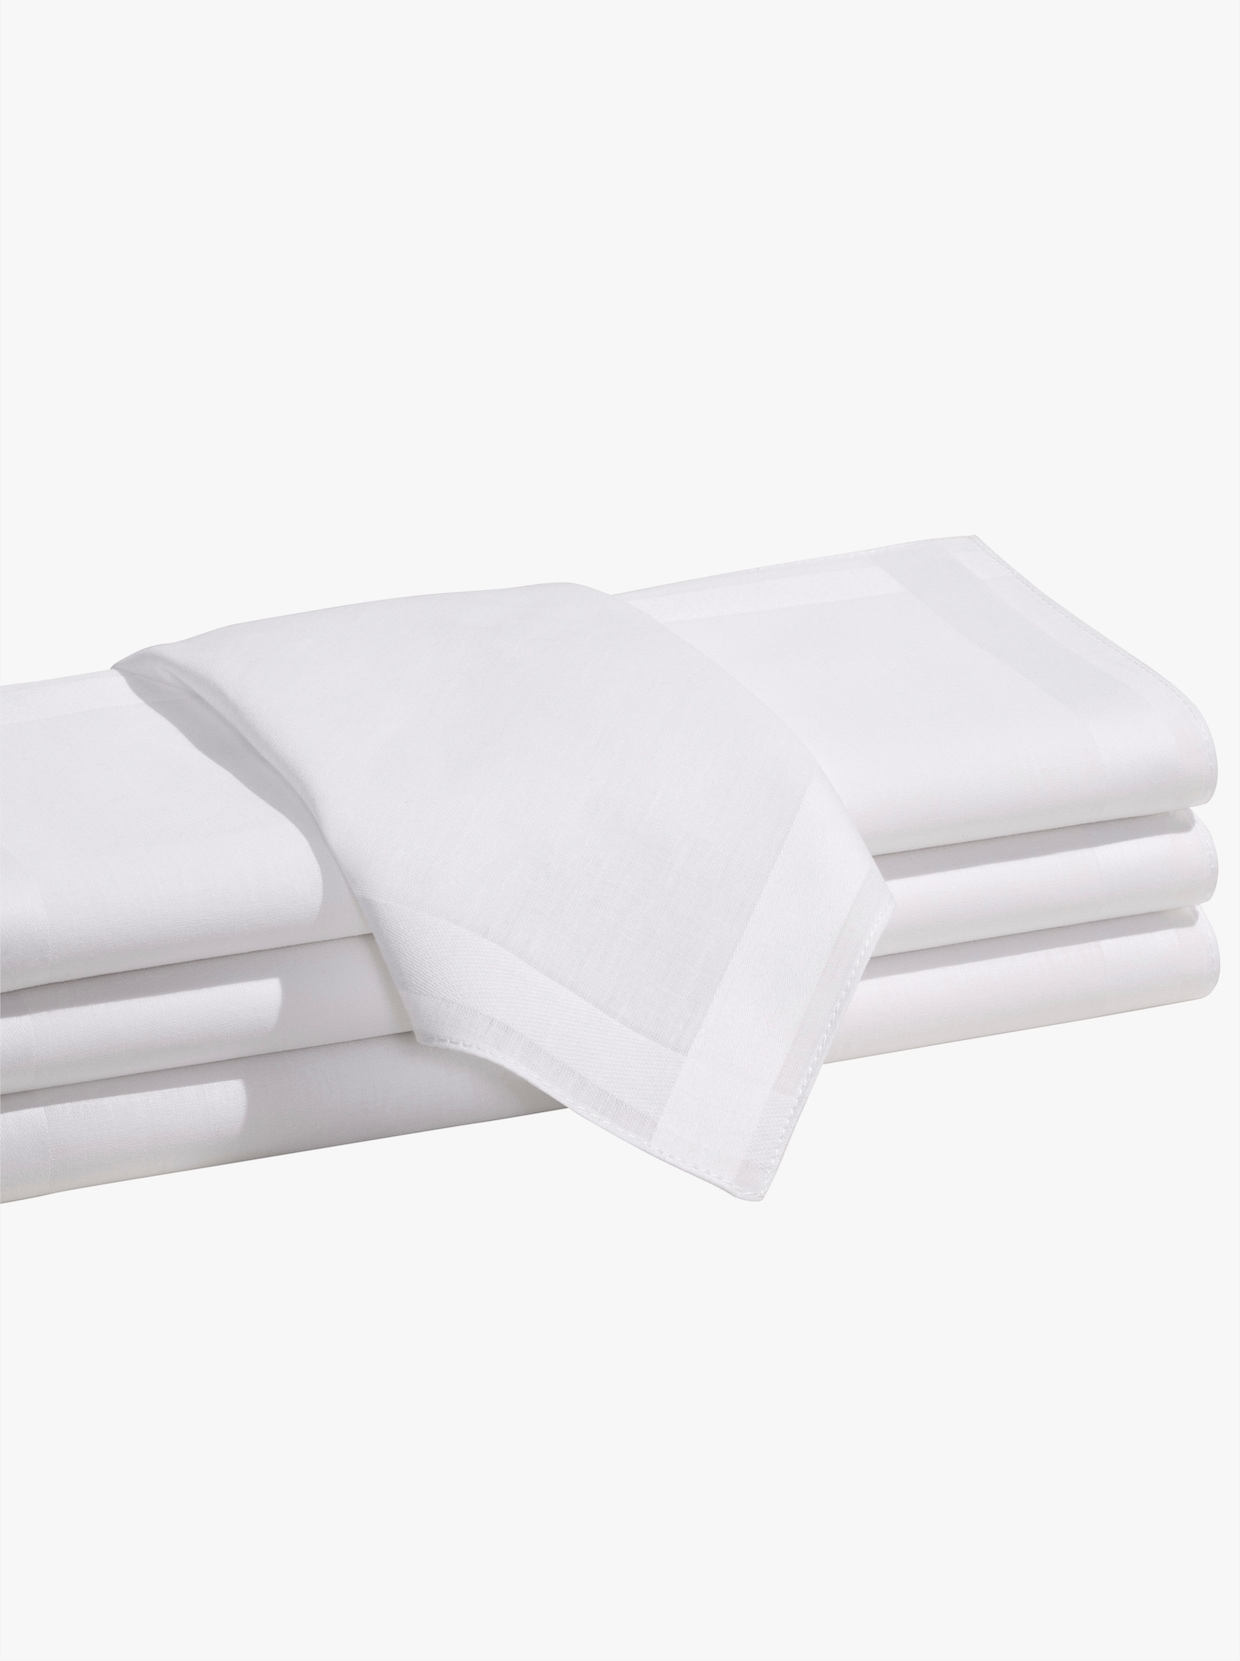 Damen-Taschentücher - weiß